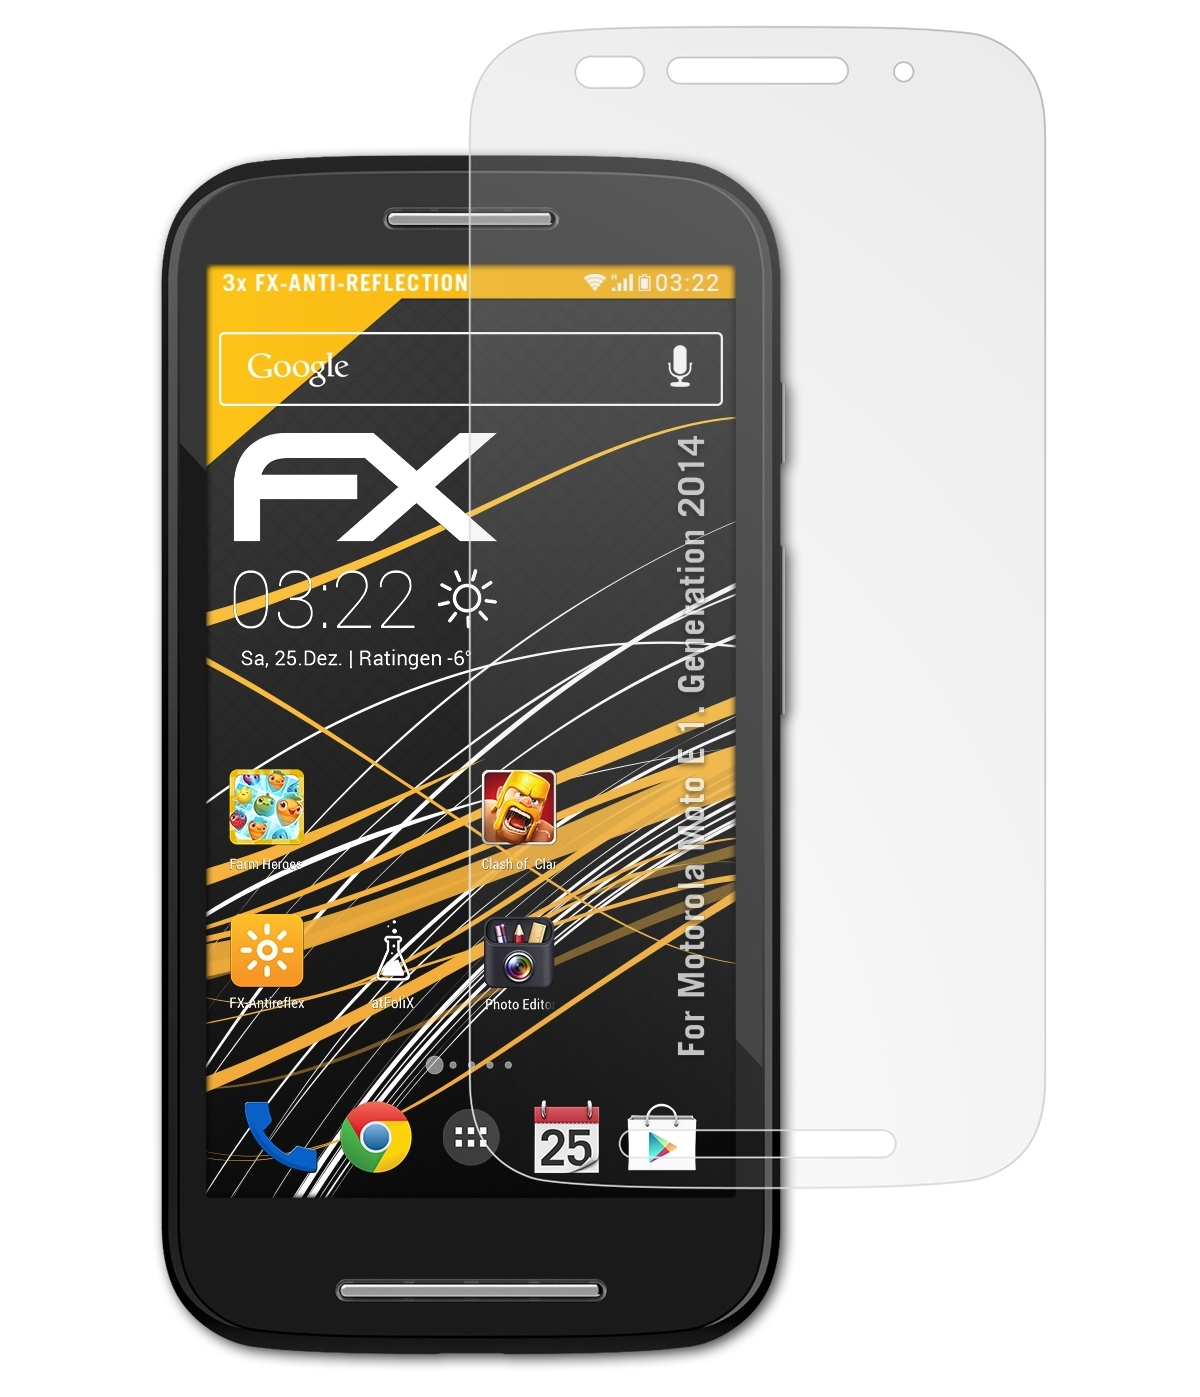 Displayschutz(für Generation (1. FX-Antireflex E 3x Motorola 2014)) Moto ATFOLIX